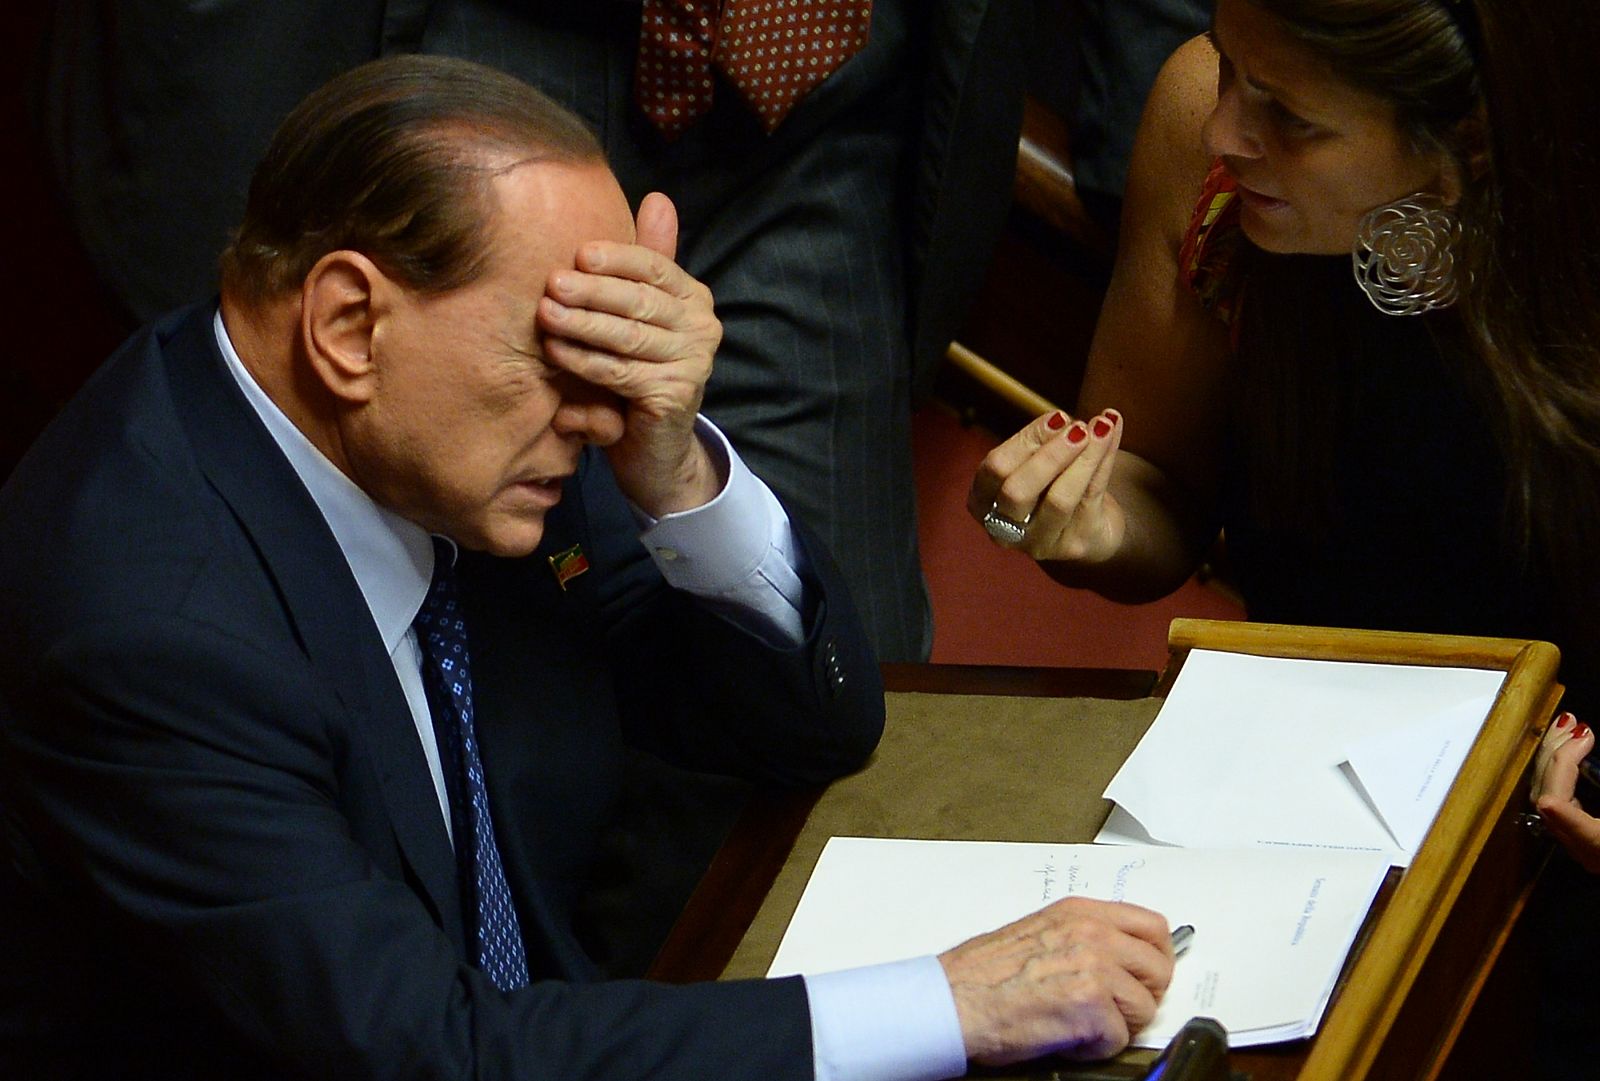 Silvio Berlusconi gesticula durante una sesión en el Senado italiano